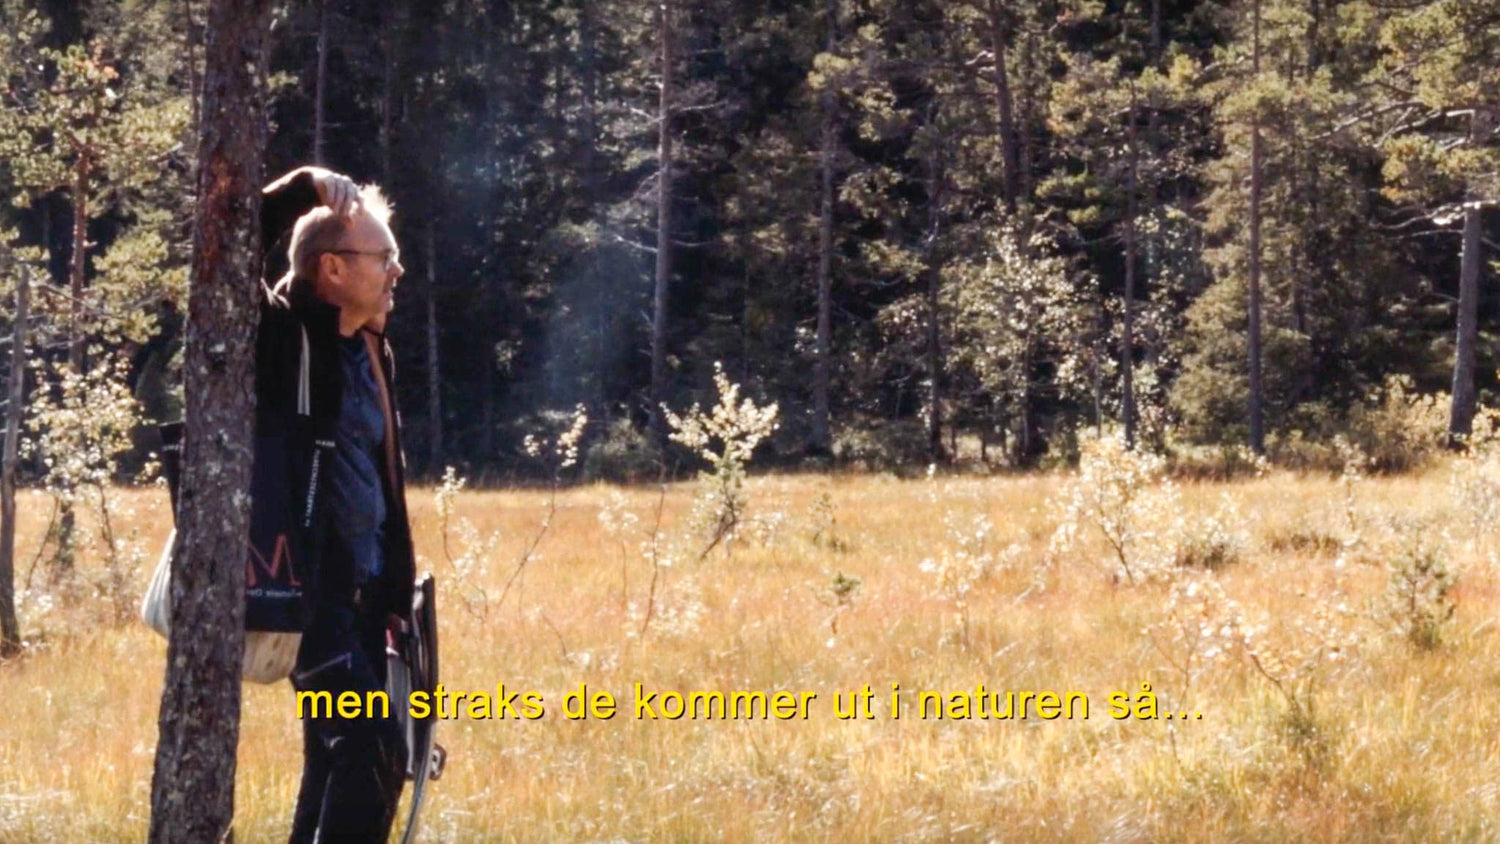 Last inn video: &lt;p&gt;Kristians refleksjoner om naturen, mennesket og kunsten.&lt;/p&gt;